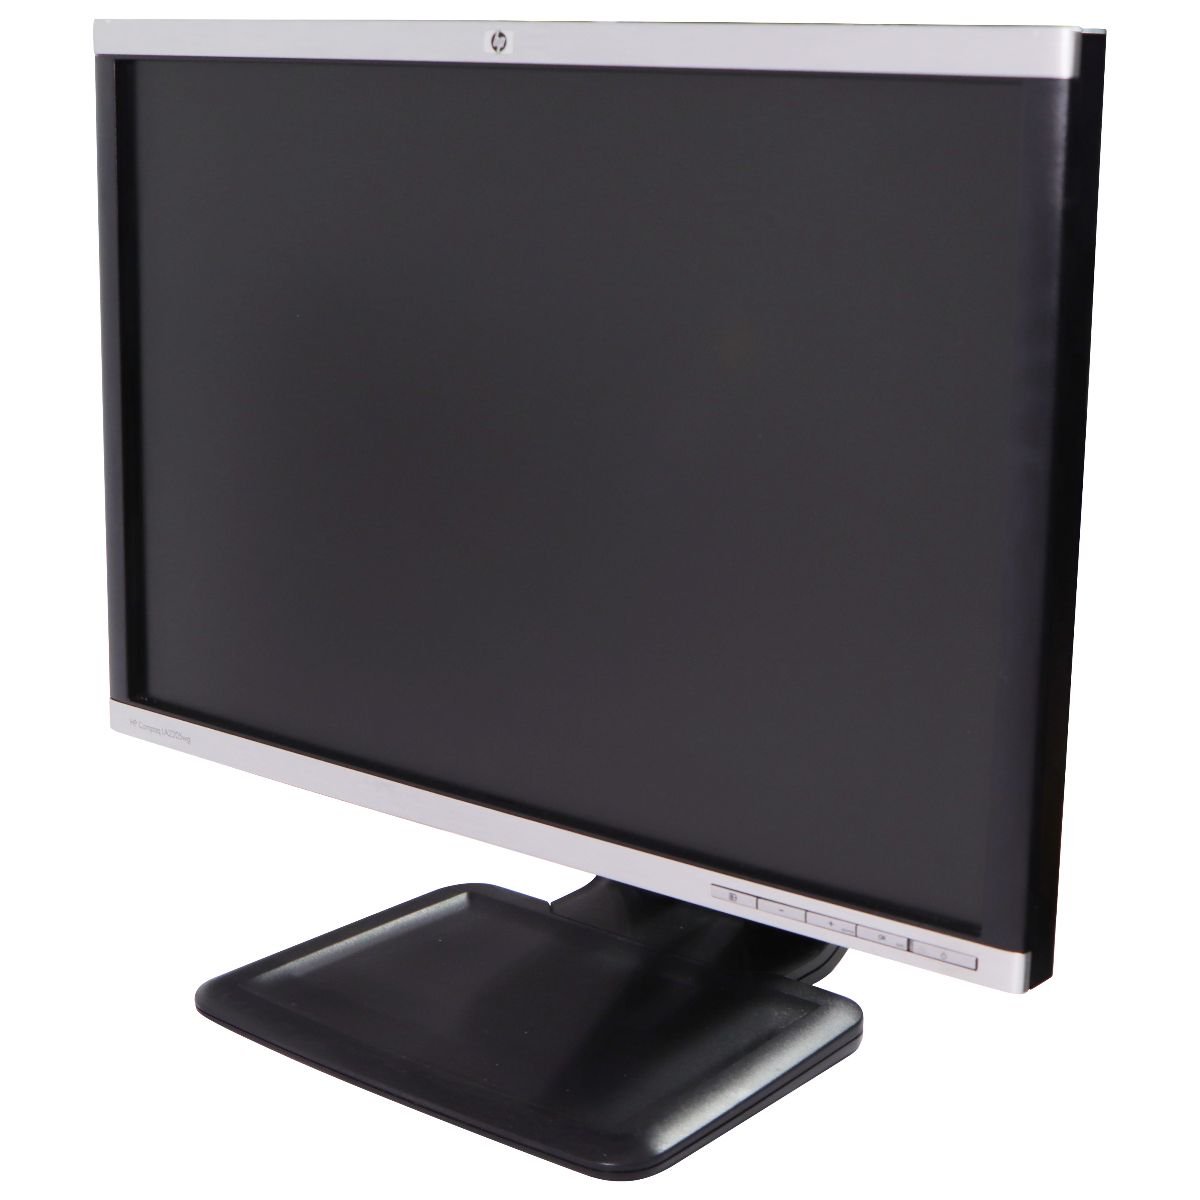 HP Compaq LA2205wg (22-inch) Widescreen (1680x1050) 16:10 LCD Monitor - Black